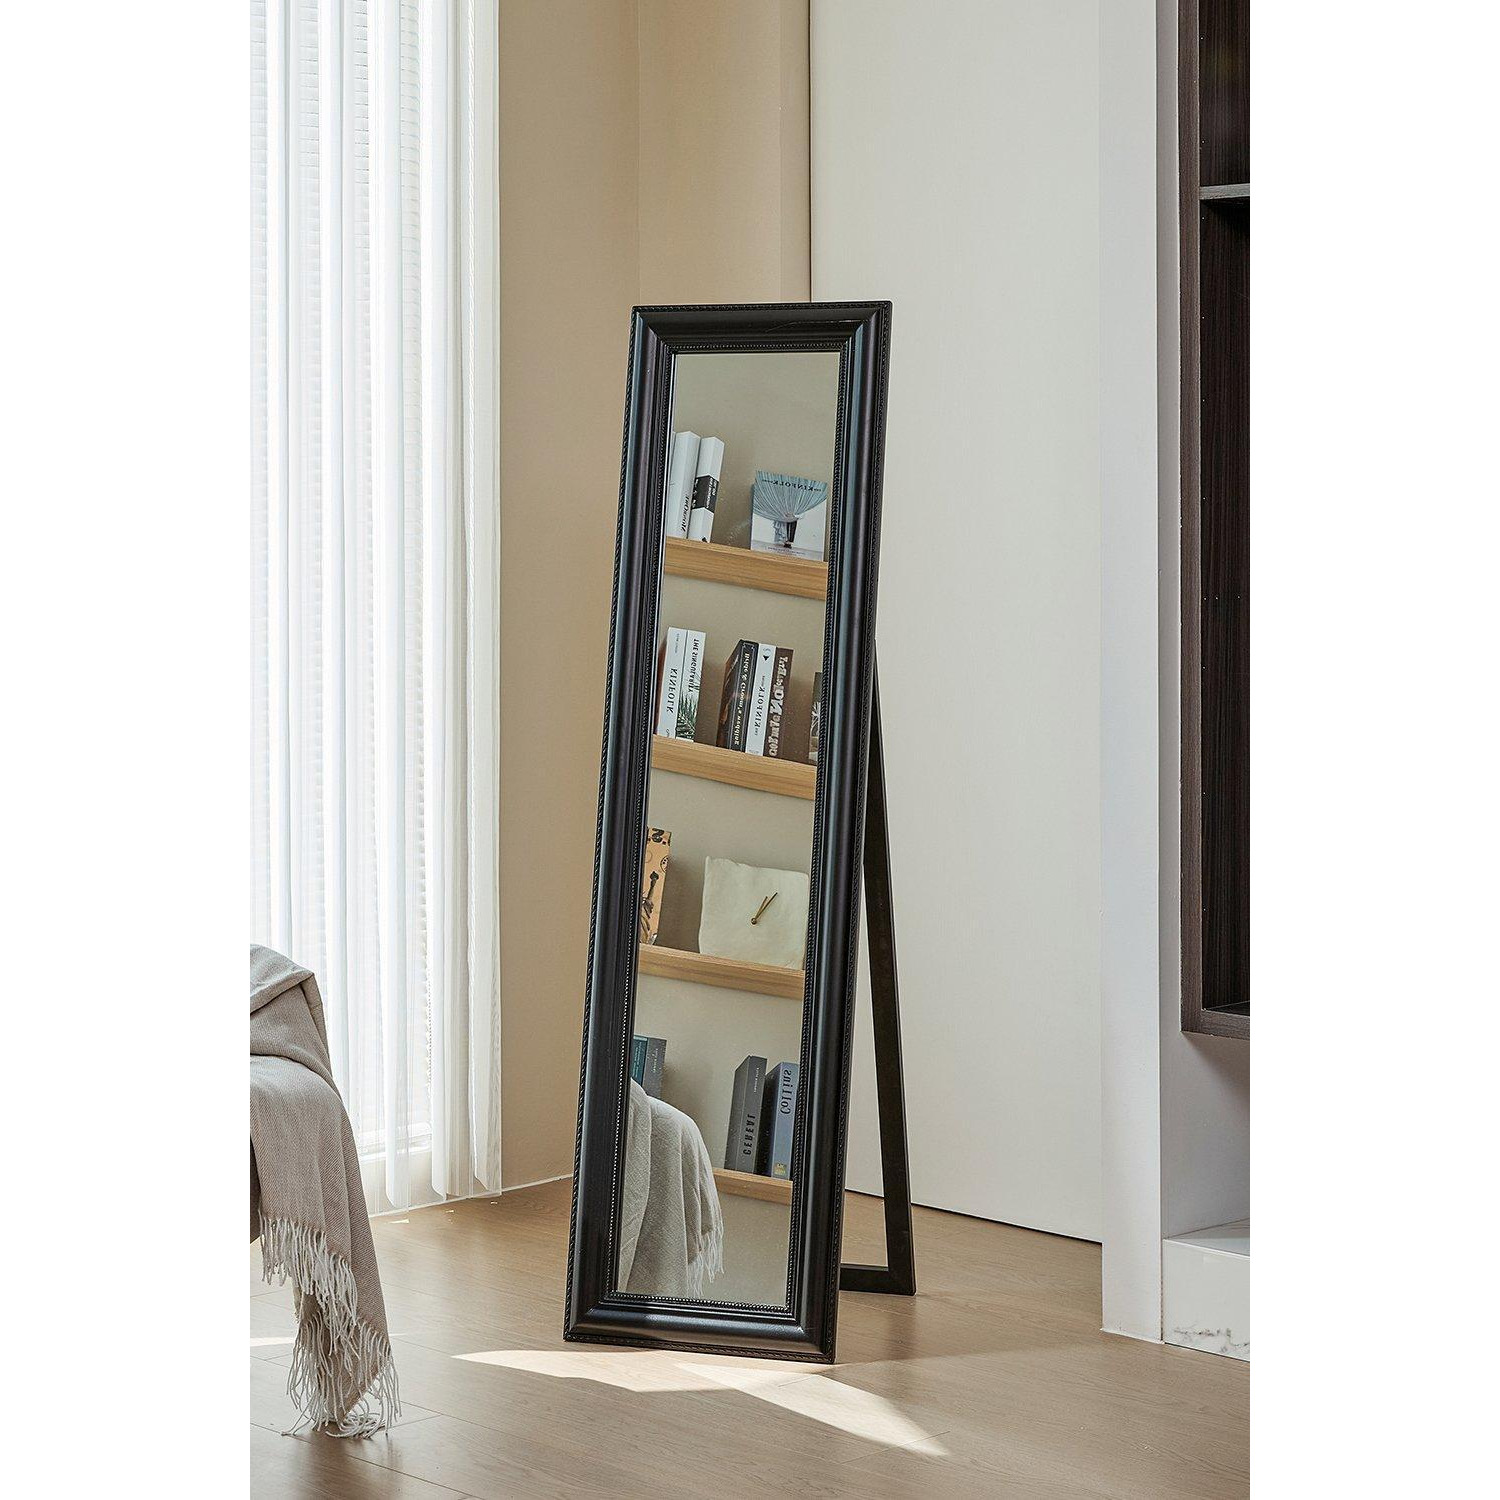 40*42*150cm Modern Black Full-Length Floor Mirror - image 1